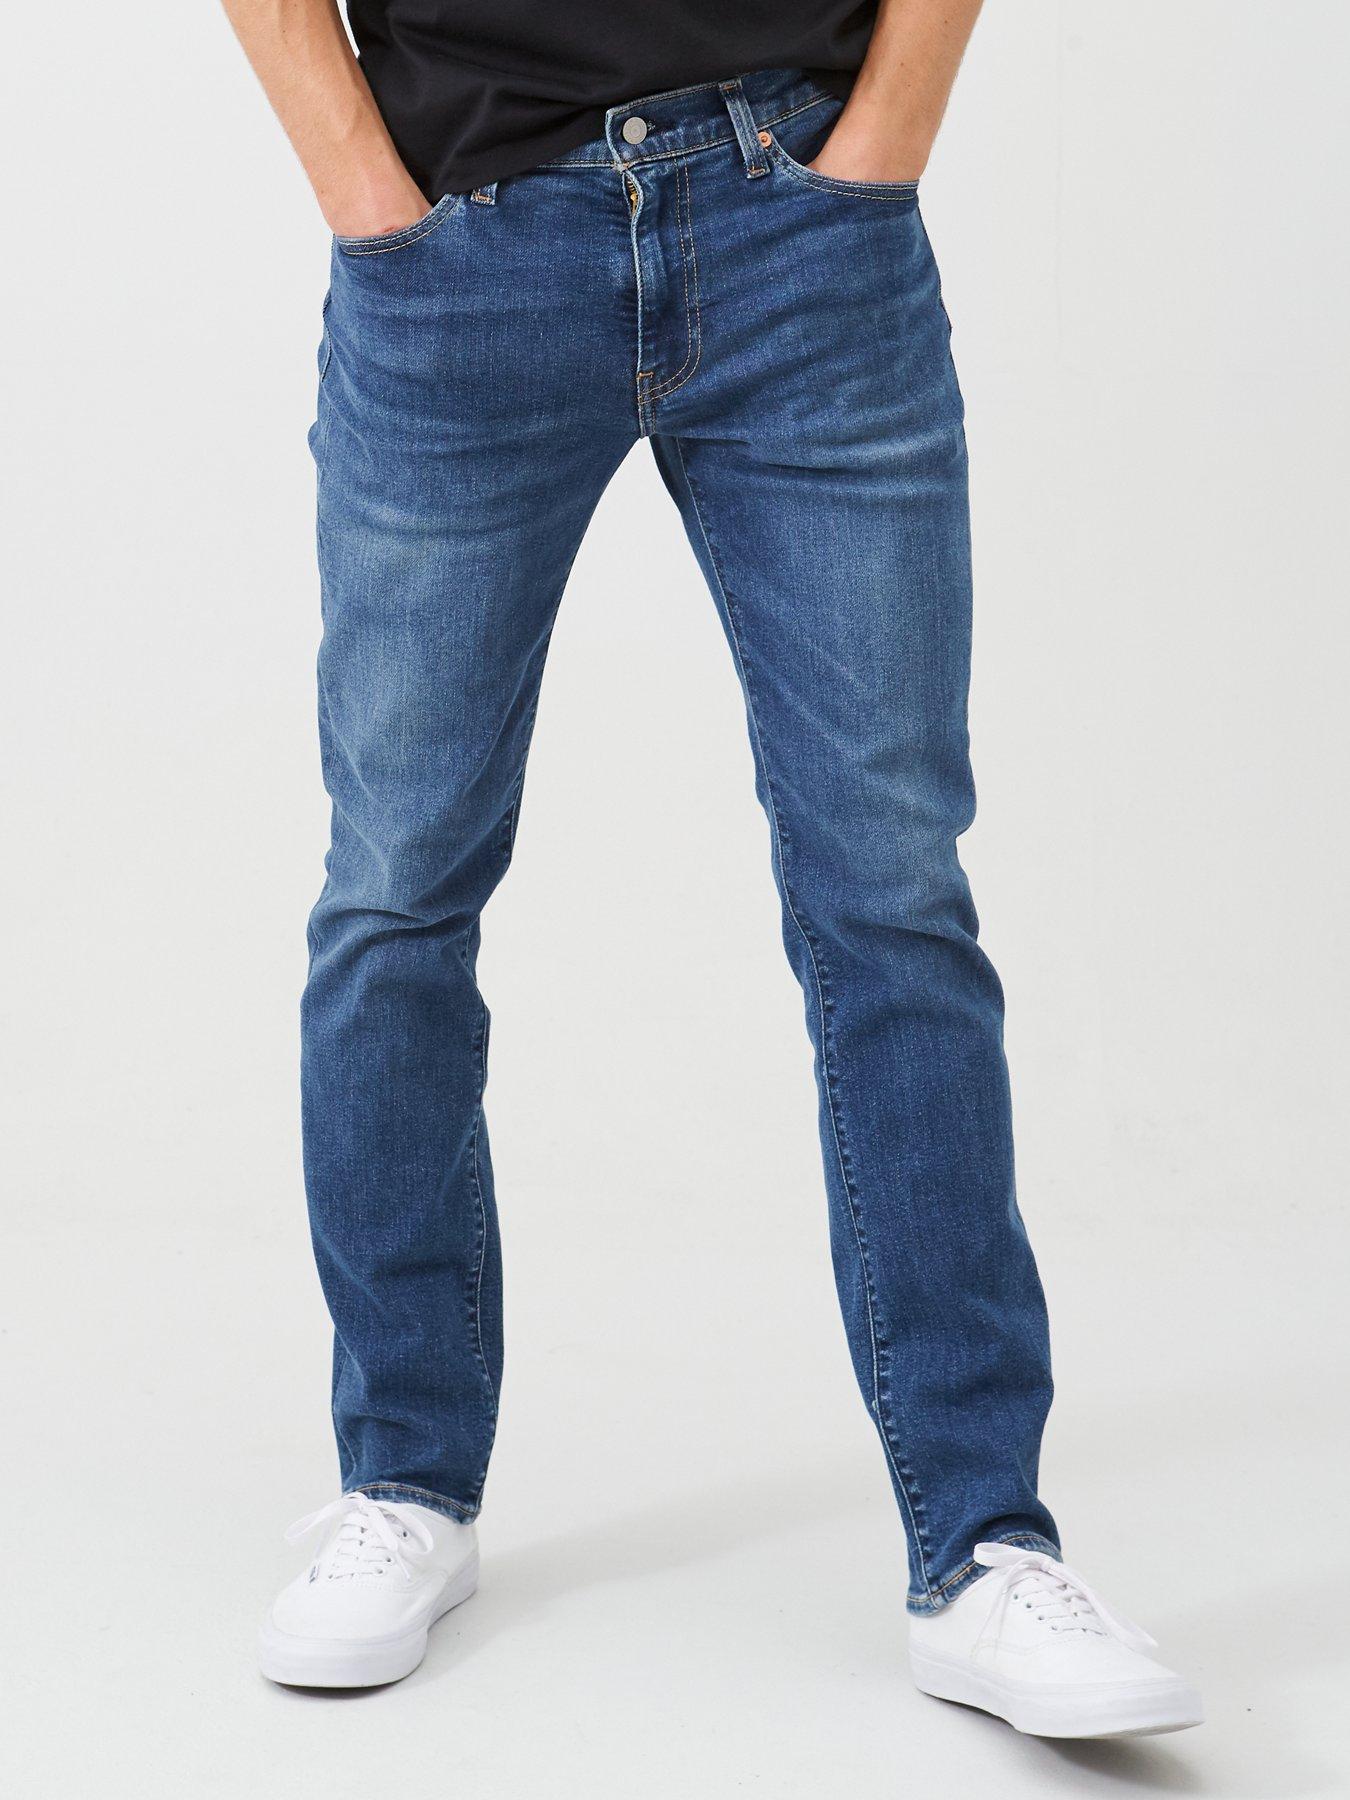 levis mens athletic fit jeans